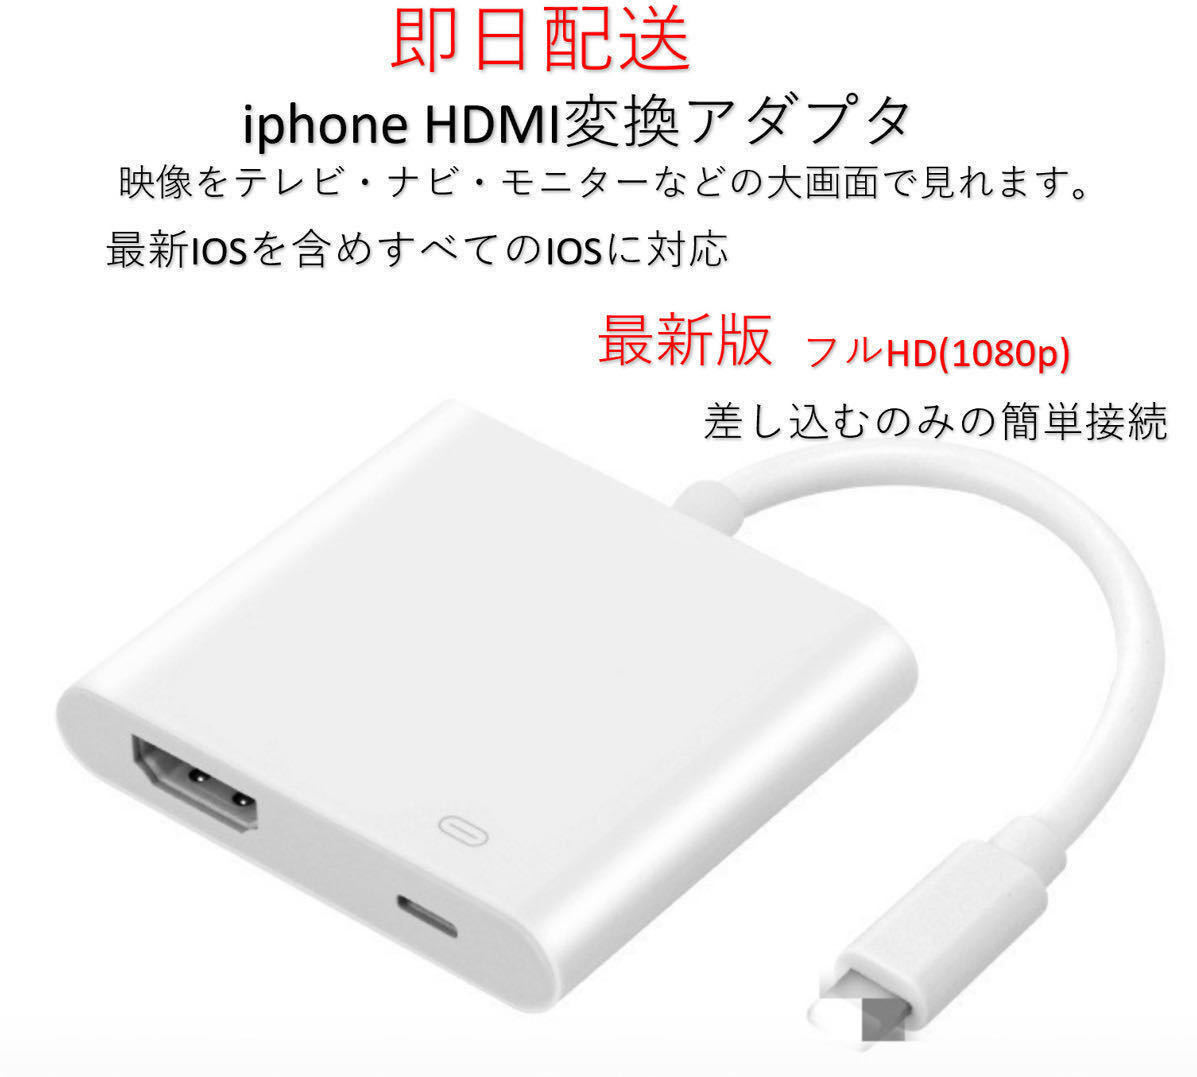 ★最新版★MFI認証 iPhone HDMI 変換アダプタ ライトニング 接続ケーブル アダプタ HDMIケーブル 有線ミラーリング 設定不要(元箱なし)の画像1